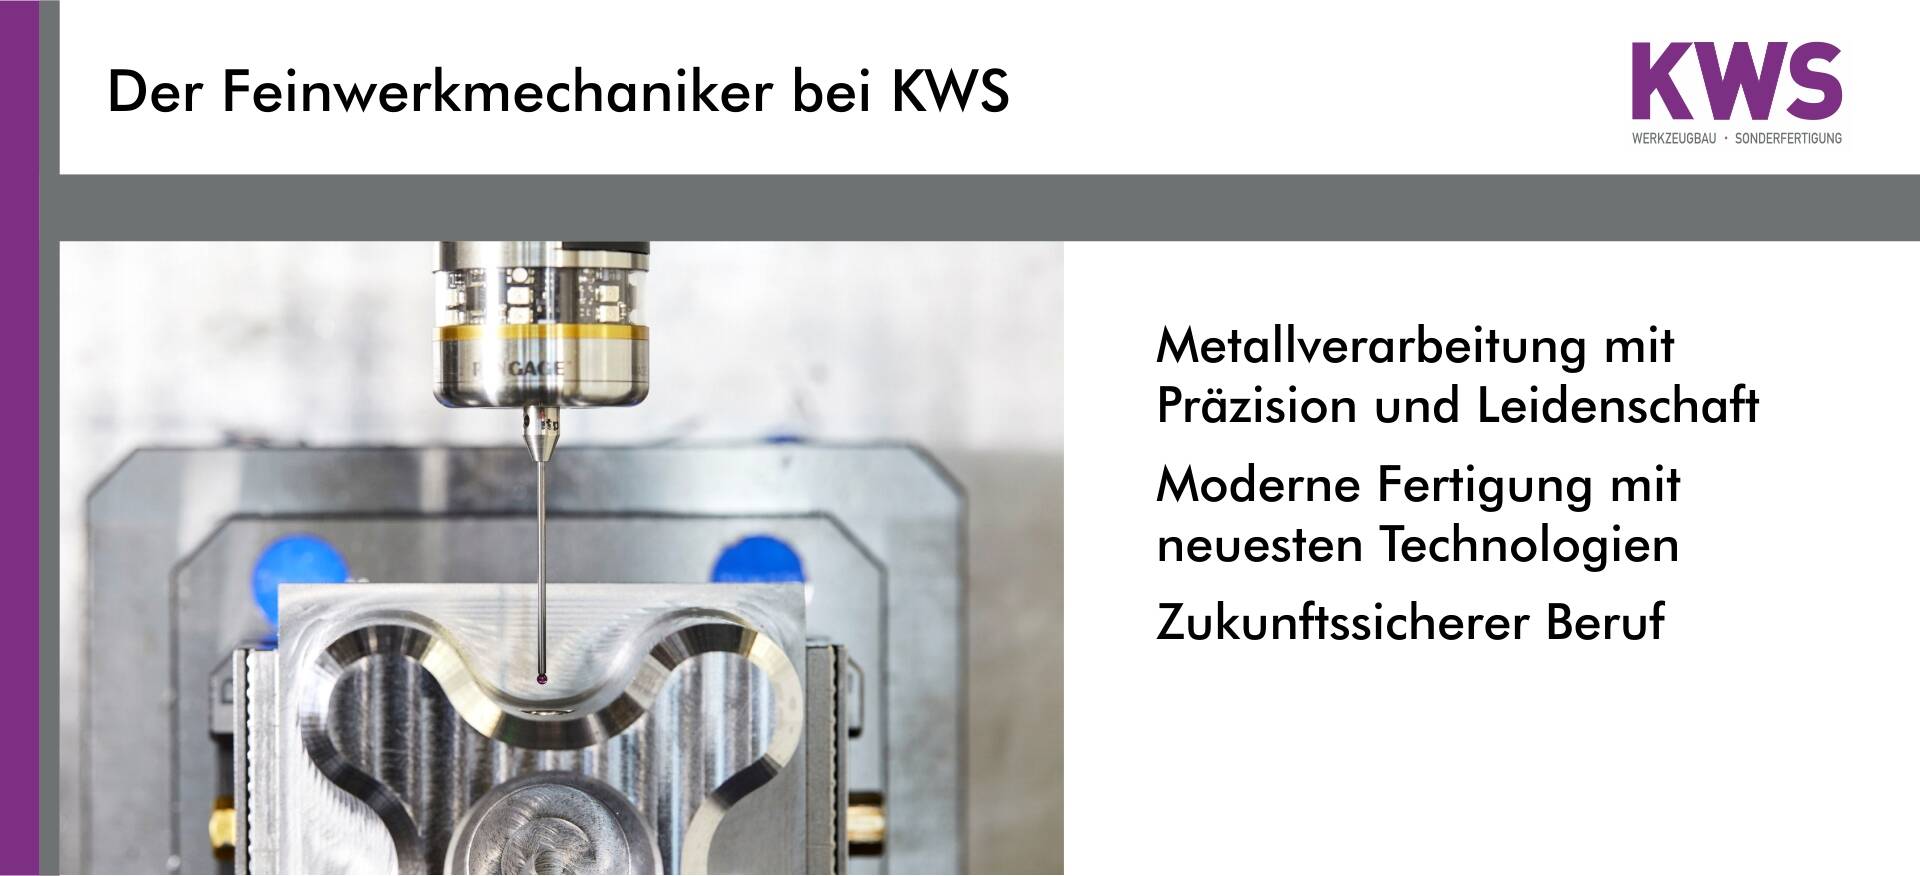 Der Feinwerkmechaniker bei KWS - Metallverarbeitung mit Präzision und Leidenschaft